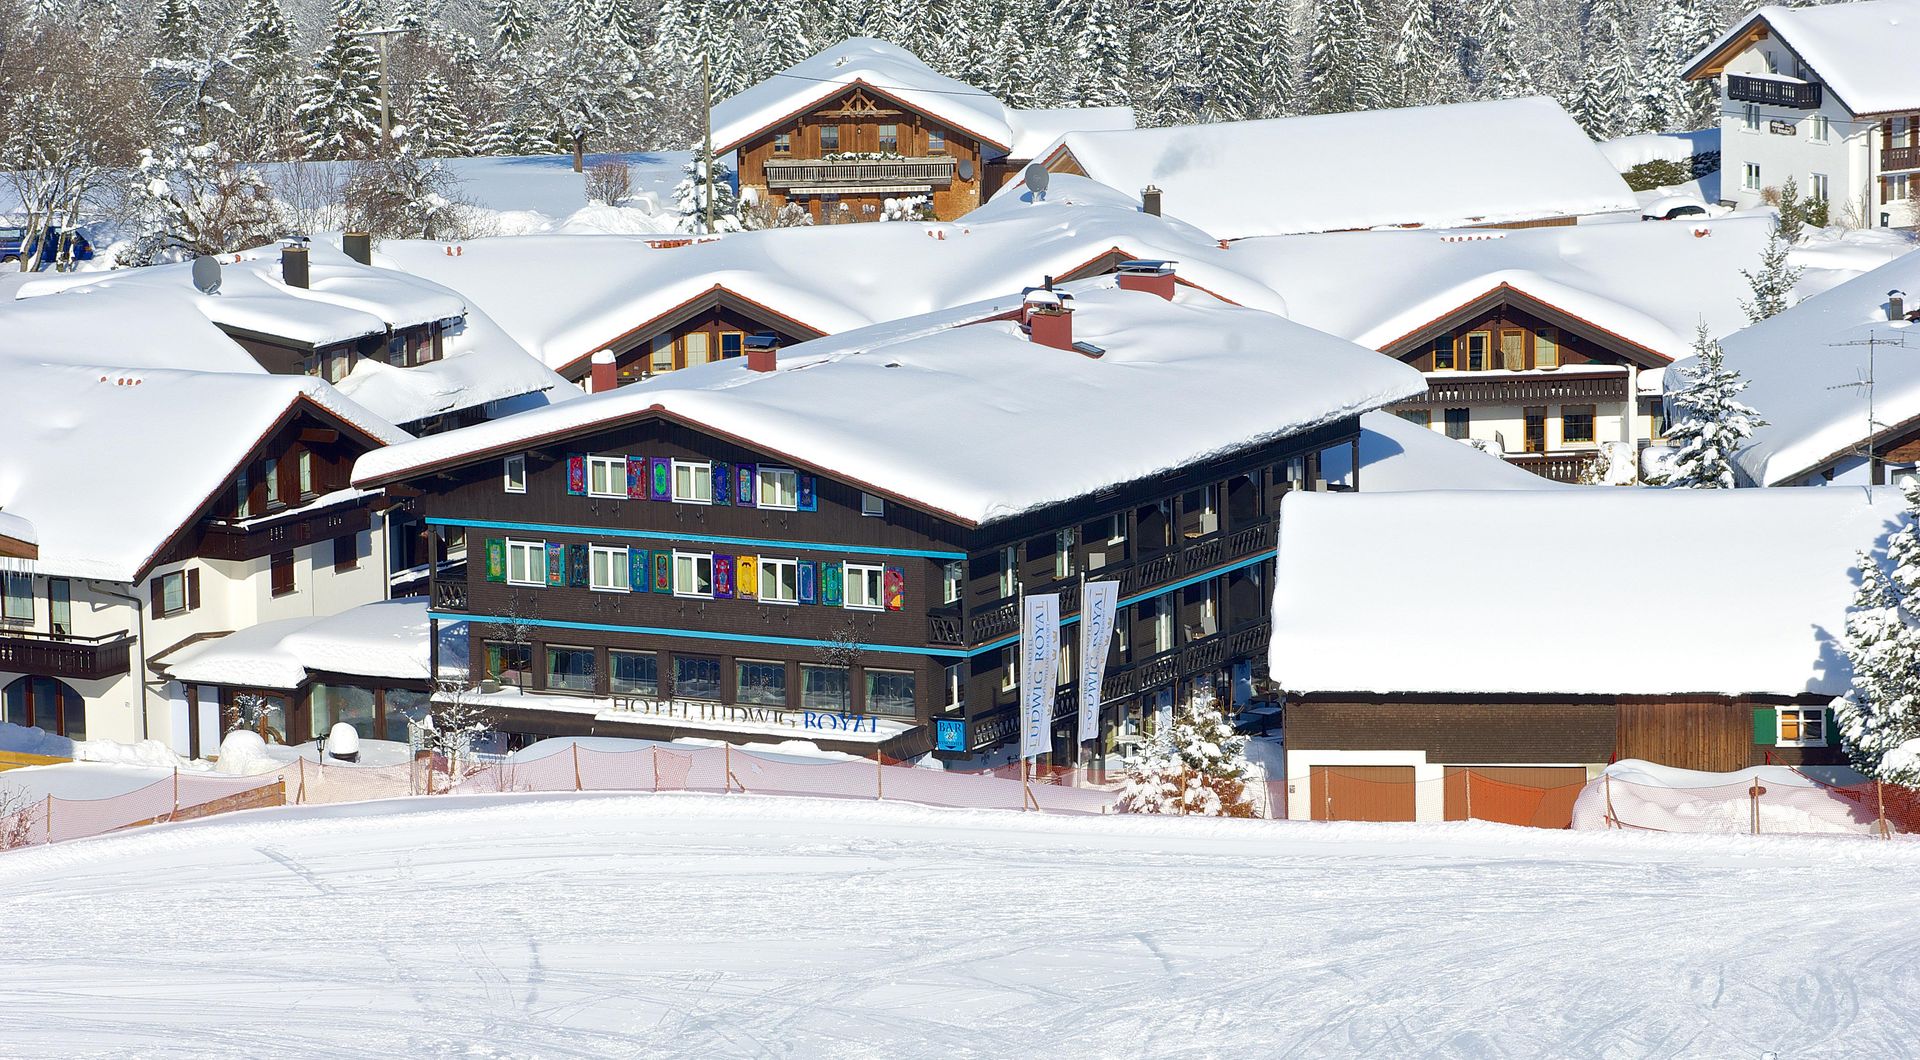 Det komfortable 4-stjernede superior Golf & Alpin Wellness Resort Hotel Ludwig er roligt beliggende i bydelen Steibis, ca. 5 km fra centrum af Oberstaufen og oplevelsesbadet Aquaria. Indstigningen til Skiarena Imberg (ligger ca. 1 km fra indkvarteringen) og nås via to transportlifter, der nås efter ca. 50 m. Til indkvarteringen hører faciliteter som reception, Wi-Fi, elevator, restaurant, morgenmadsrum, bar, ski- og støvlerum, terrasse, gratis parkeringspladser og en parkeringsgarage mod betaling (hvis ledig). Det komfortable og store wellnessområde på ca. 1.800 m² (for åbningstider, se opslag på stedet) har svømmehal, dampbad, infrarødkabine, finsk sauna, urte-sauna, spabad samt hvilerum. Der er også et fitnessområde med cardio- og fitnessredskaber, der kan benyttes gratis. Solarium, massager og behandlinger i skønhedscenteret er mod betaling (åbningstider se info på indkvarteringen). Deltagelse i hotellets fritidsprogram (se opslag på hotellet) er inkluderet i prisen. Desuden får man 22 % rabat på dagsliftkortet Imberg Arena (vinterdrift) samt 10 % rabat på tekstiler hos Sport Hauber. Forplejning 1/2 pensionen PLUS, der allerede er inkluderet i prisen, består af righoldig morgenmadsbuffet, eftermiddags-"jause" (kl. 14 - 15.30) samt en buffet eller 4-retters valgmenu om aftenen.